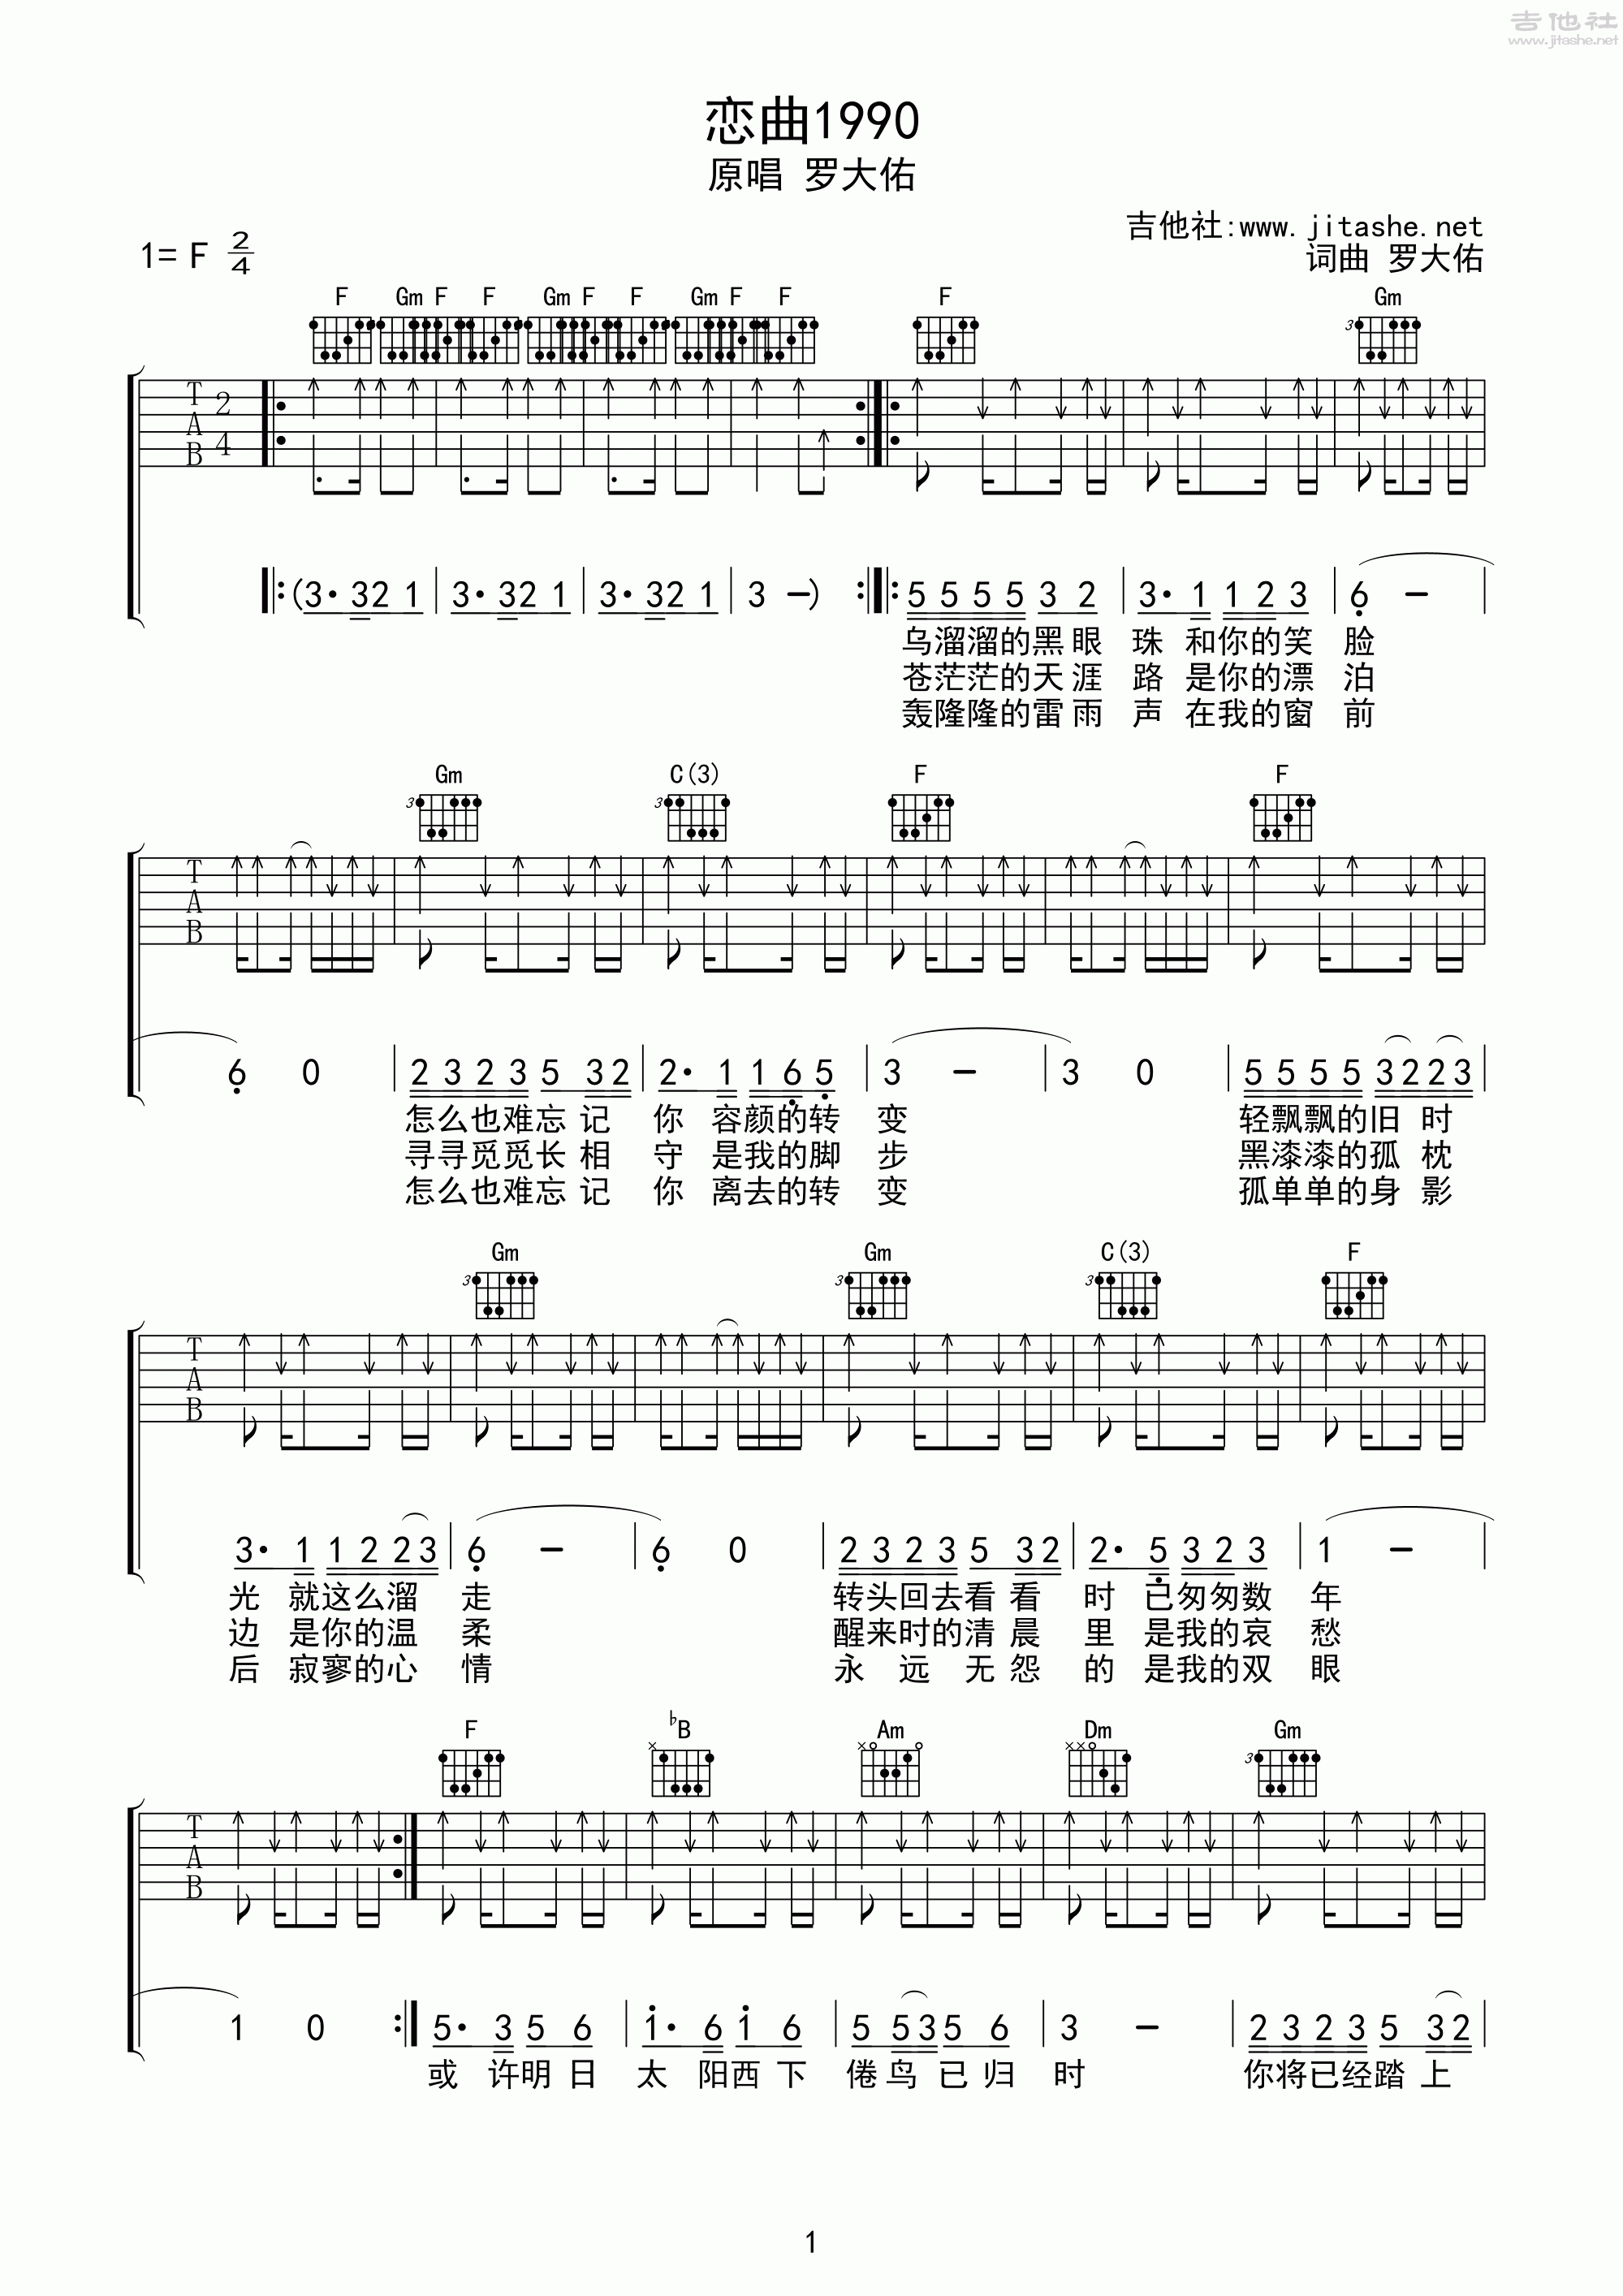 1990恋曲吉他c简谱图片